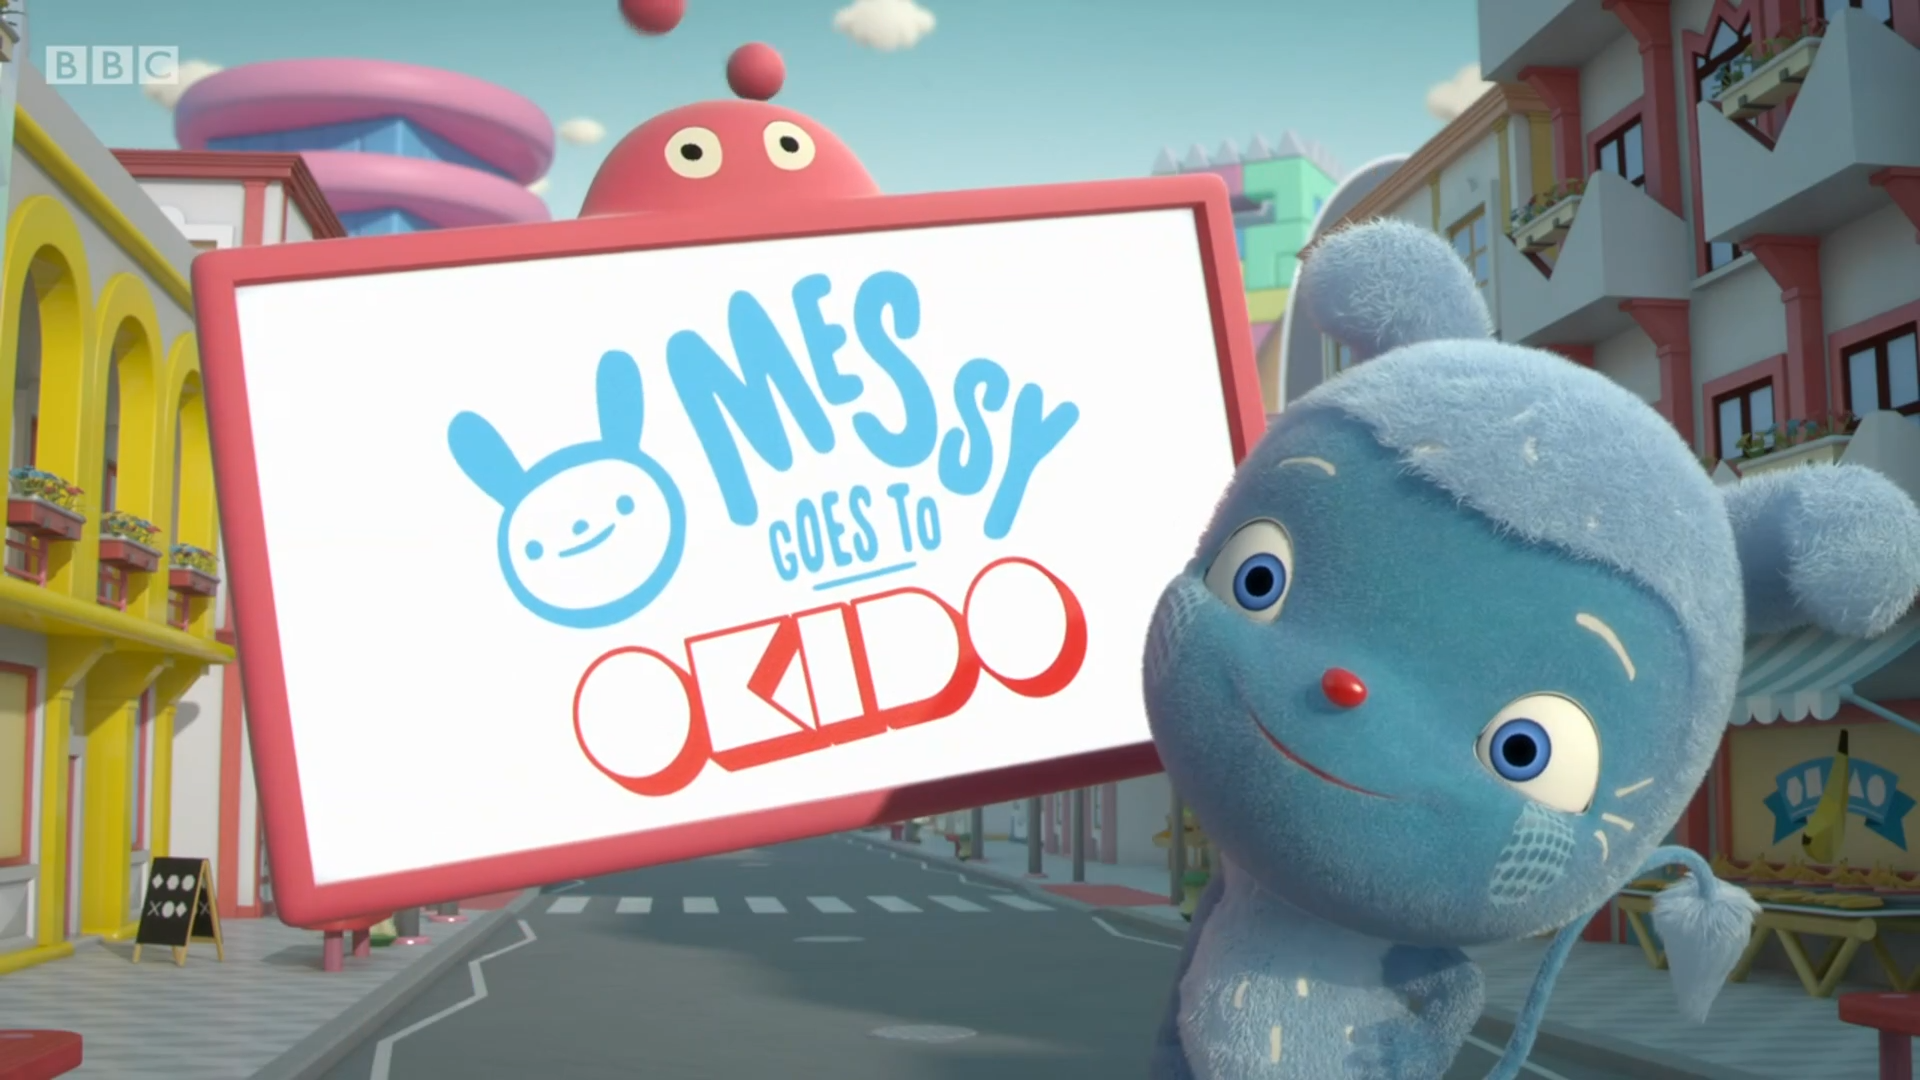 BBC英文科普动画Messy Goes to OKIDO，全1-3季共104集，1080P高清视频带英文字幕，百度网盘下载！ | 继续淘